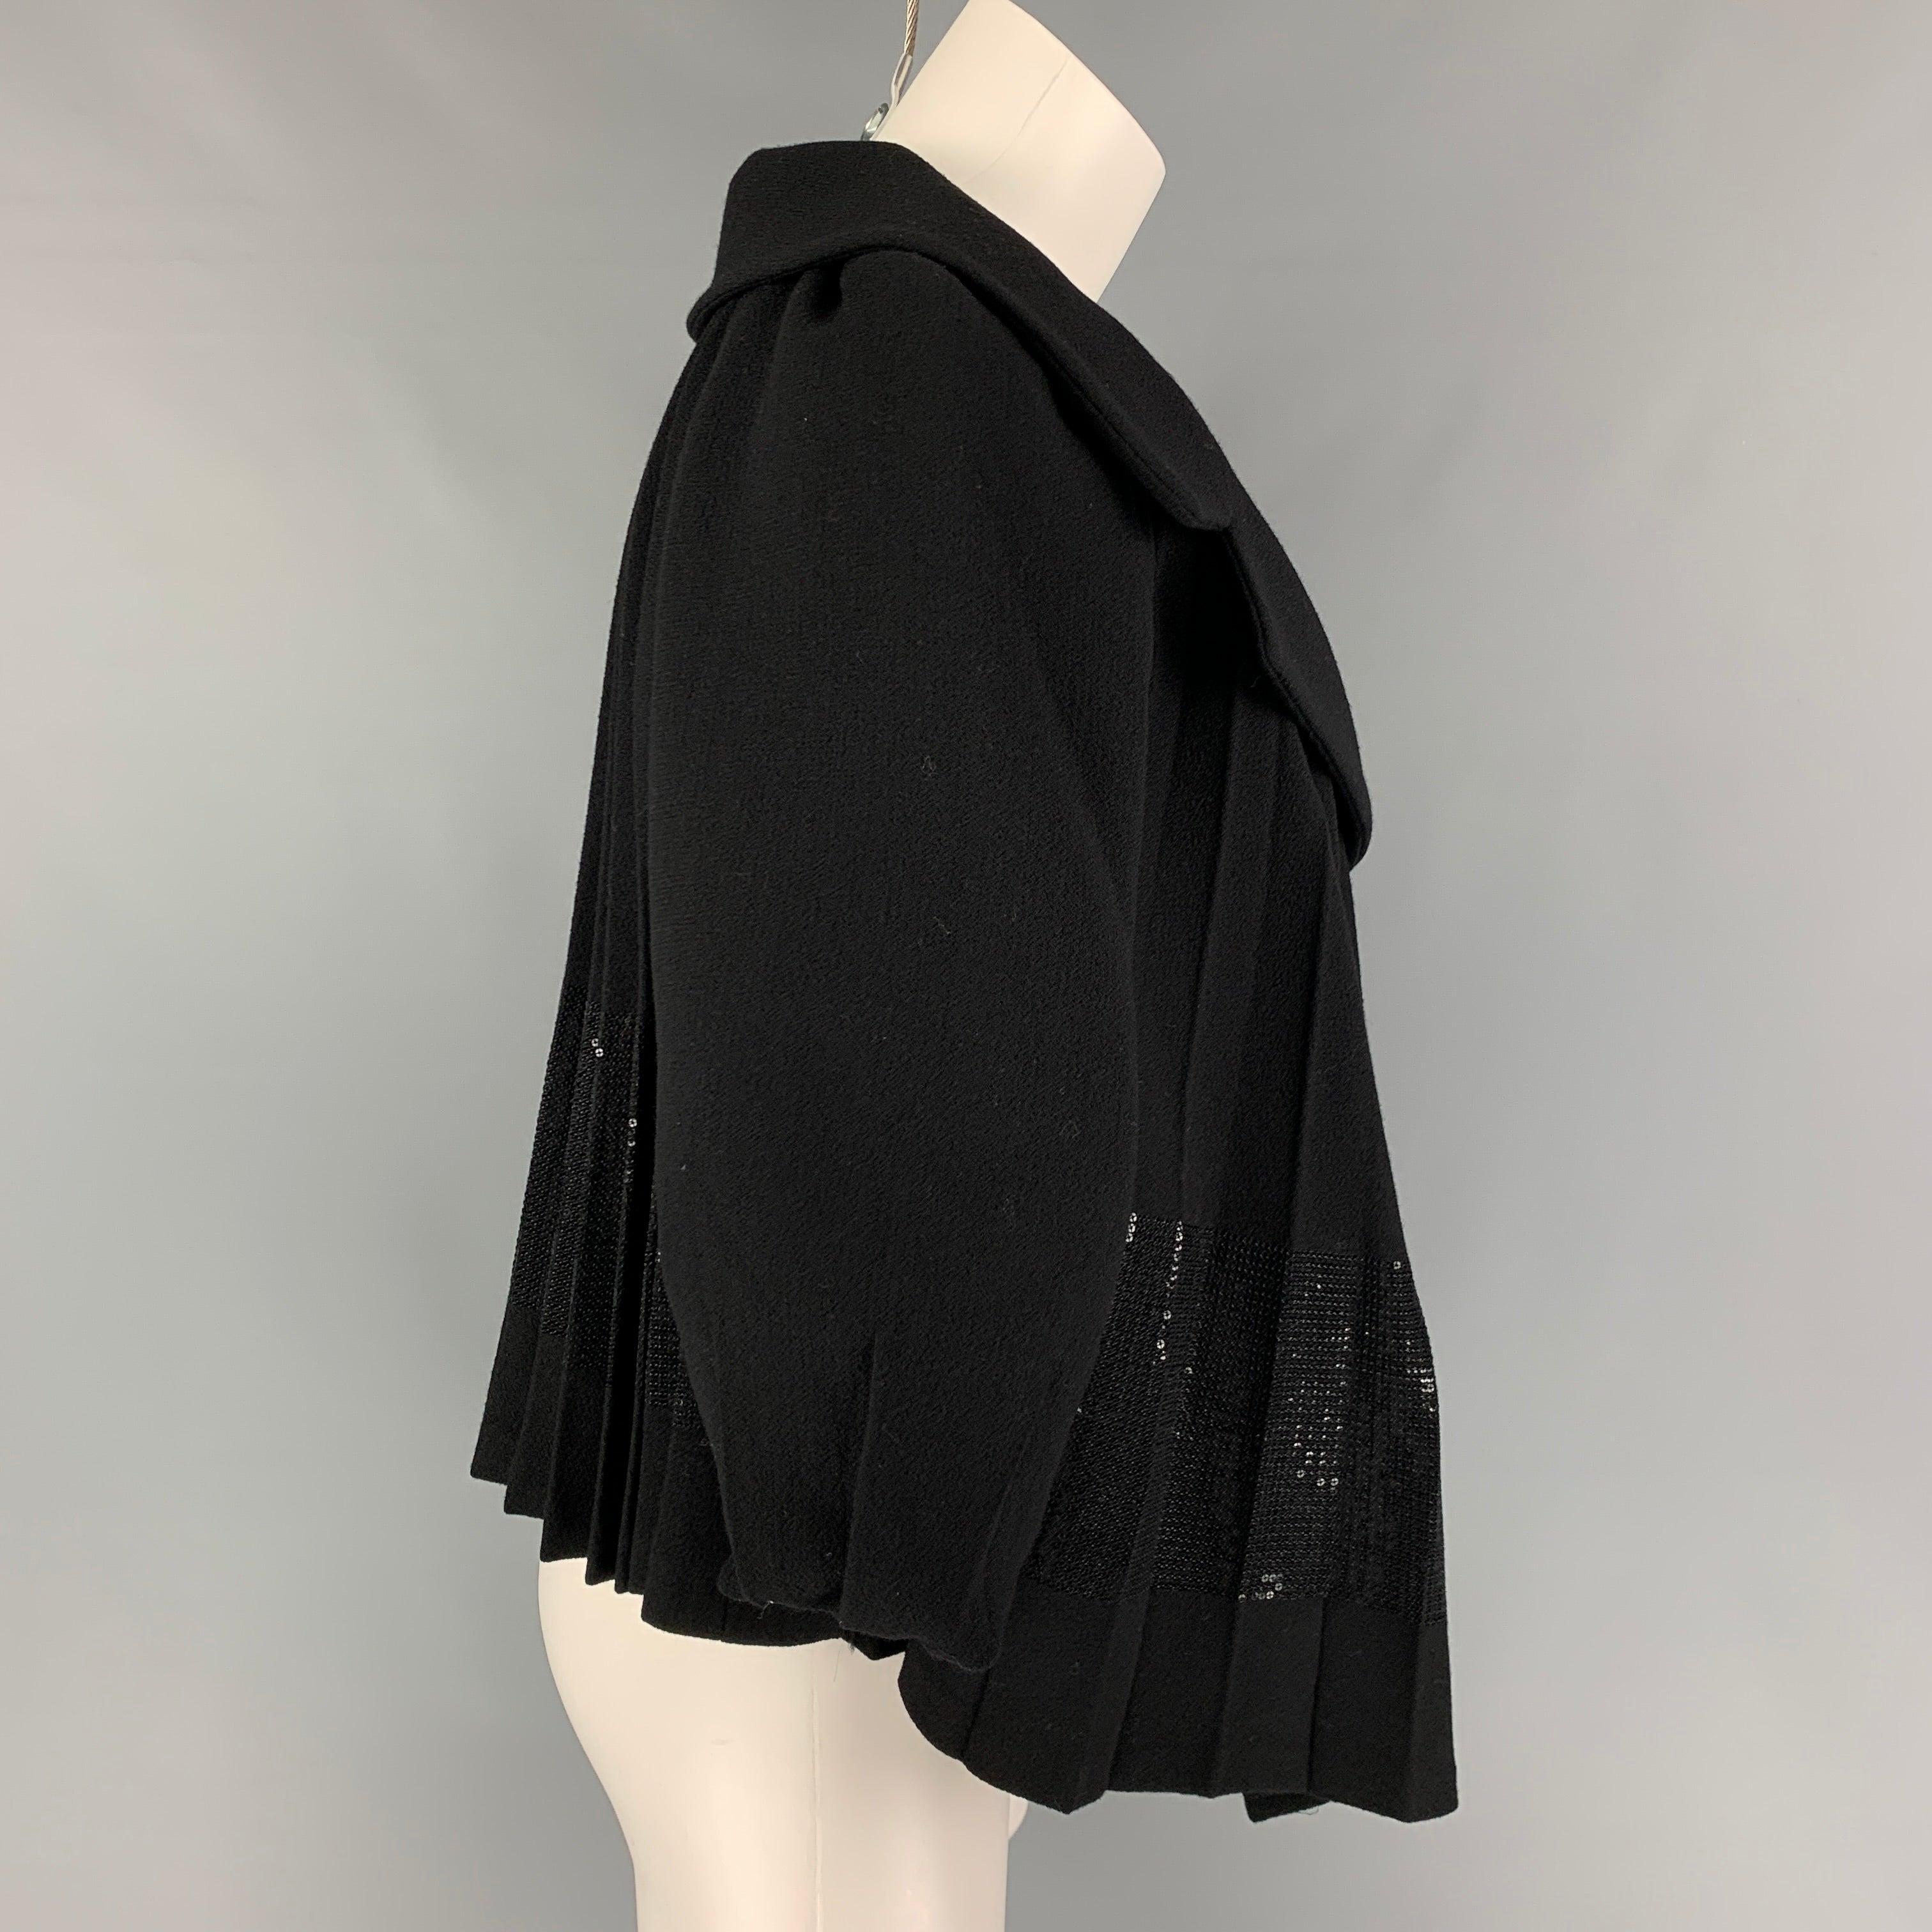 La veste GIAMBATTISTA VALLI est réalisée en laine vierge noire et présente un style plissé, un large revers à cran, un panneau pailleté et une fermeture à bouton-pression. Fabriquées en Italie.
Très bien
Etat d'occasion. 

Marqué :   40/XS 

Mesures